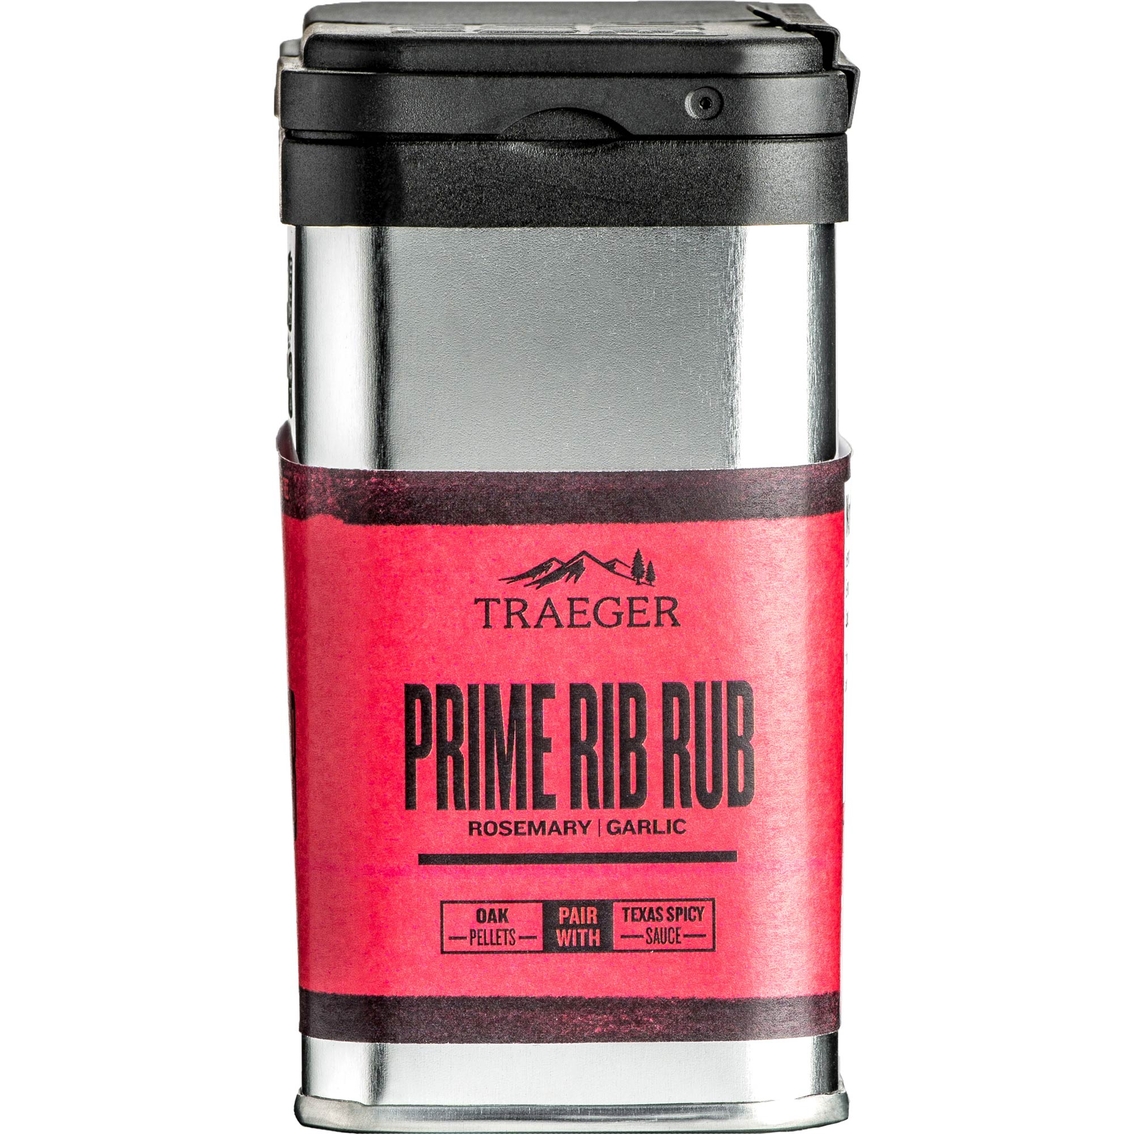 Traeger Prime Rib Rub 9.25 oz. - Image 3 of 3